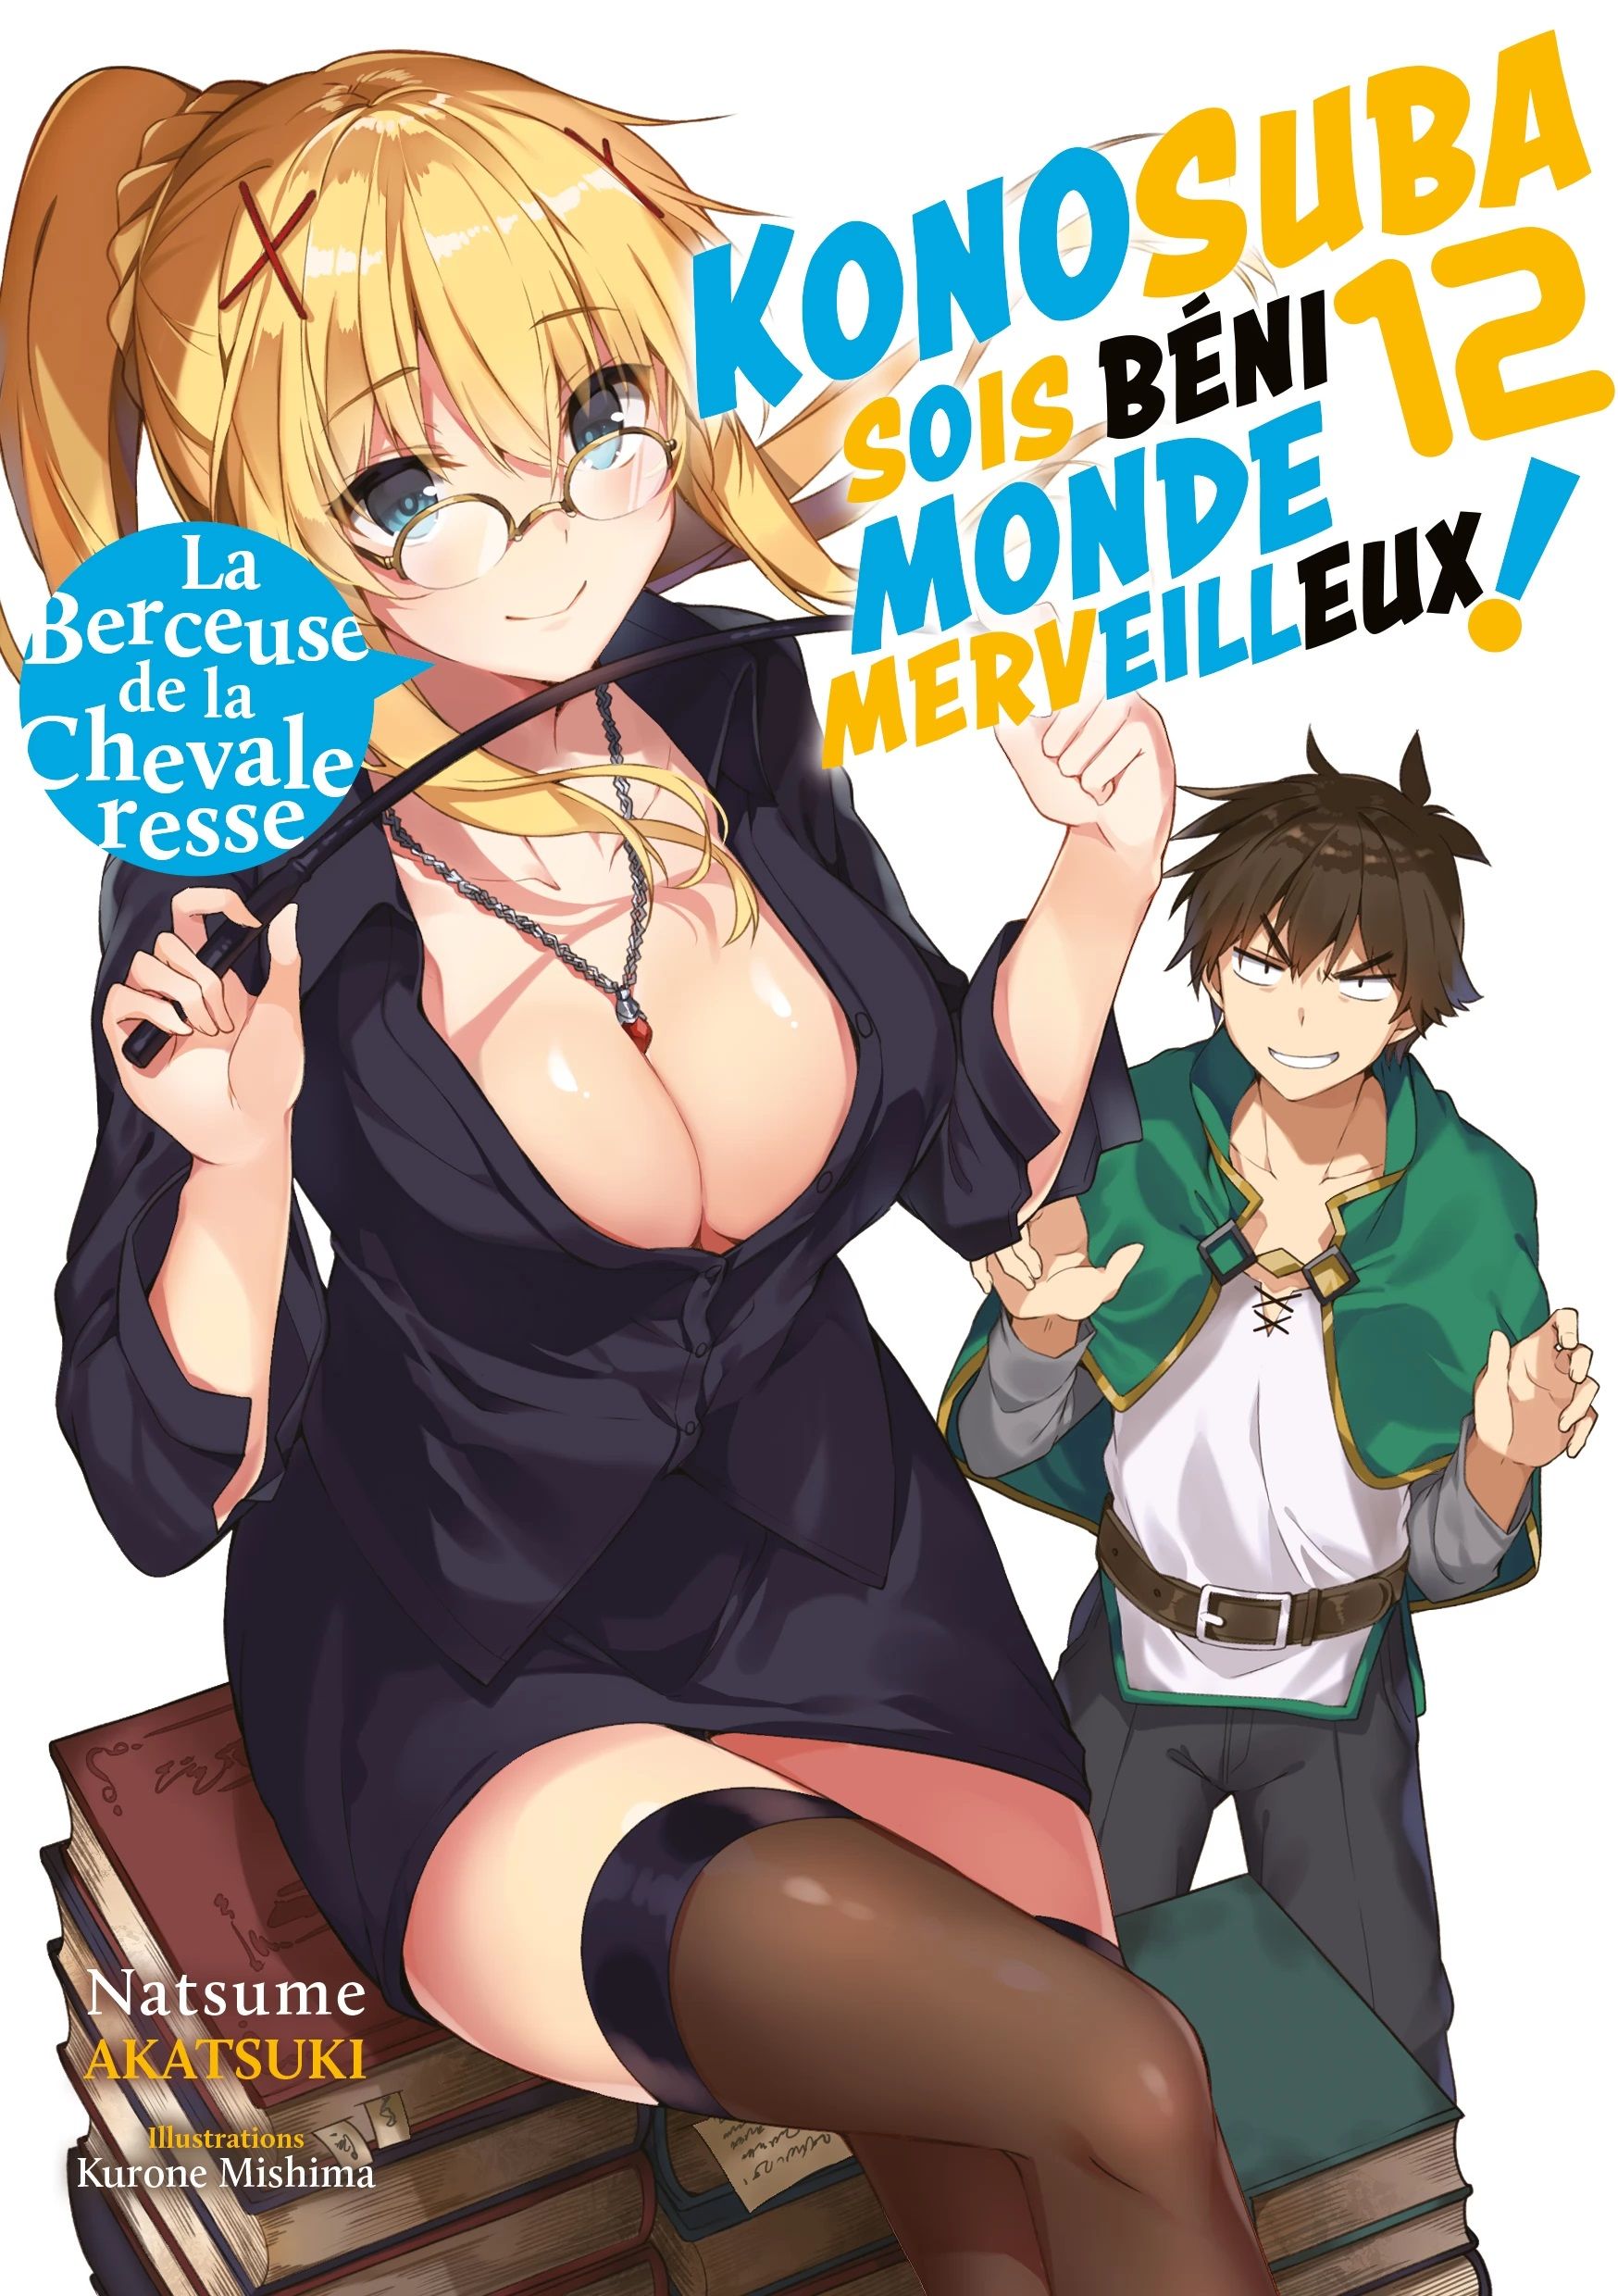 Konosuba - Sois Béni Monde Merveilleux - Light Novel Vol.12